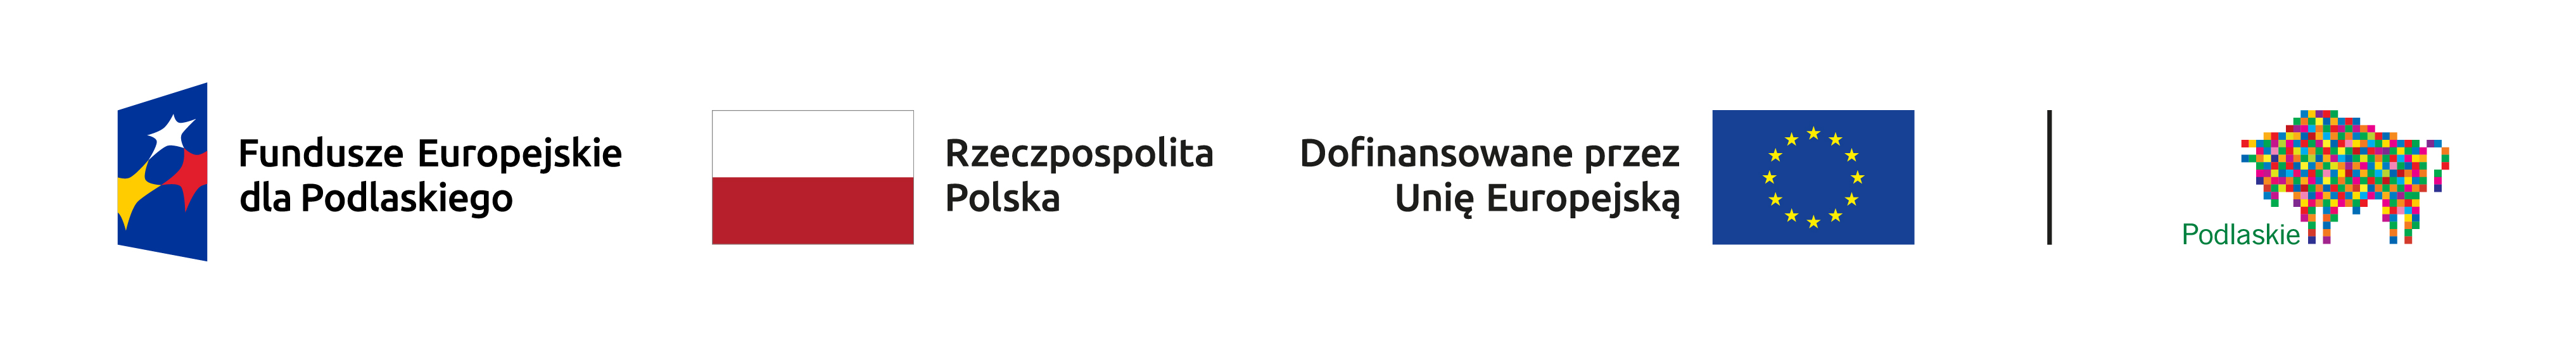 logotypy funduszy europejskich